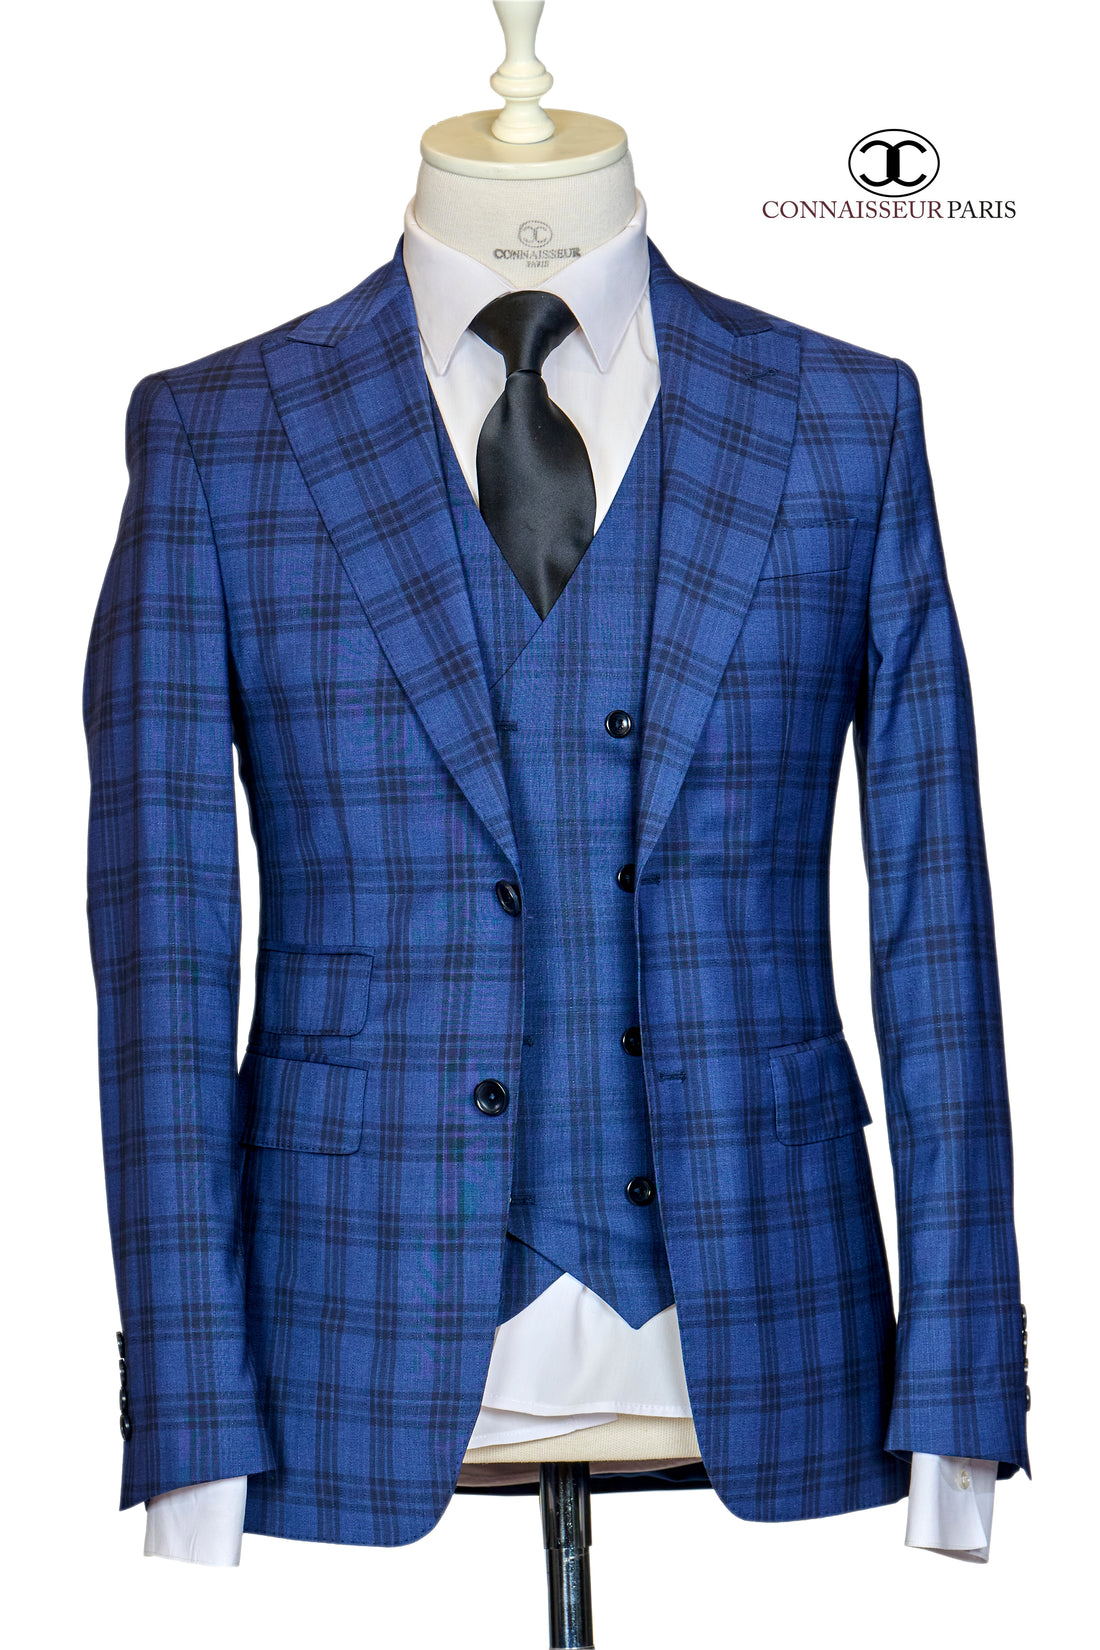 Vitale Barberis - Blue with Black Plaid 3-piece slim fit suit